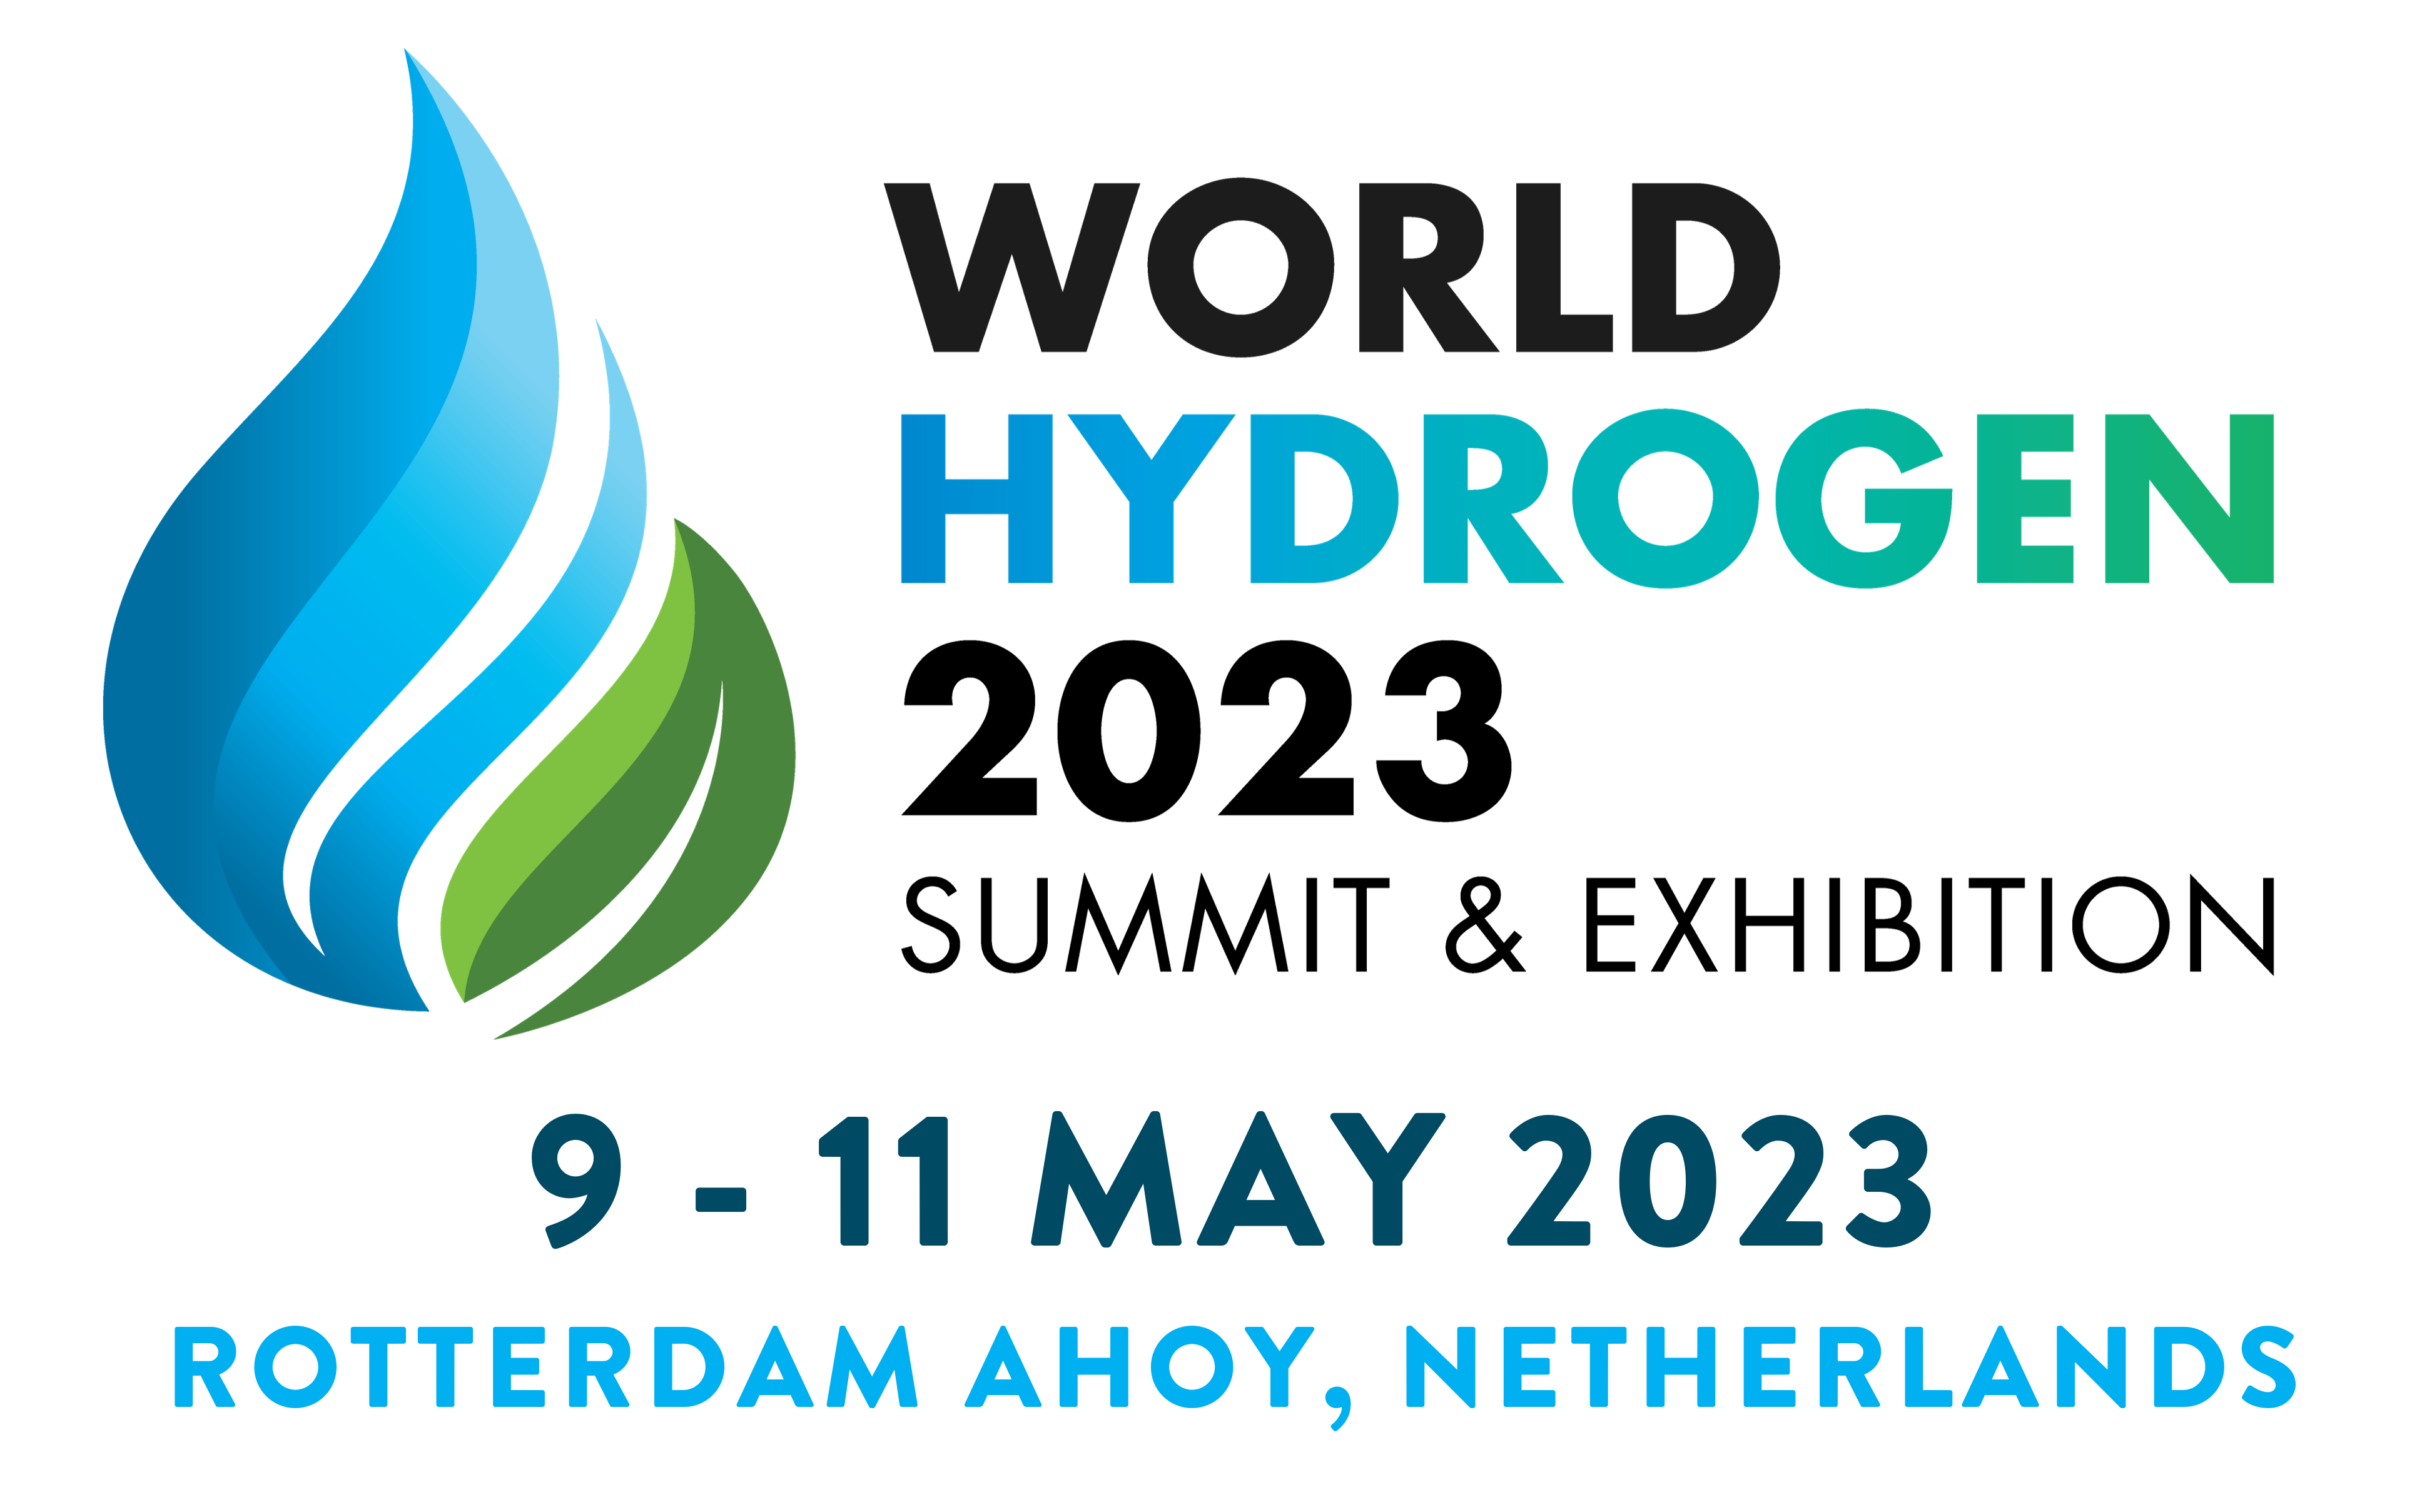 World Hydrogen Summit 2023 